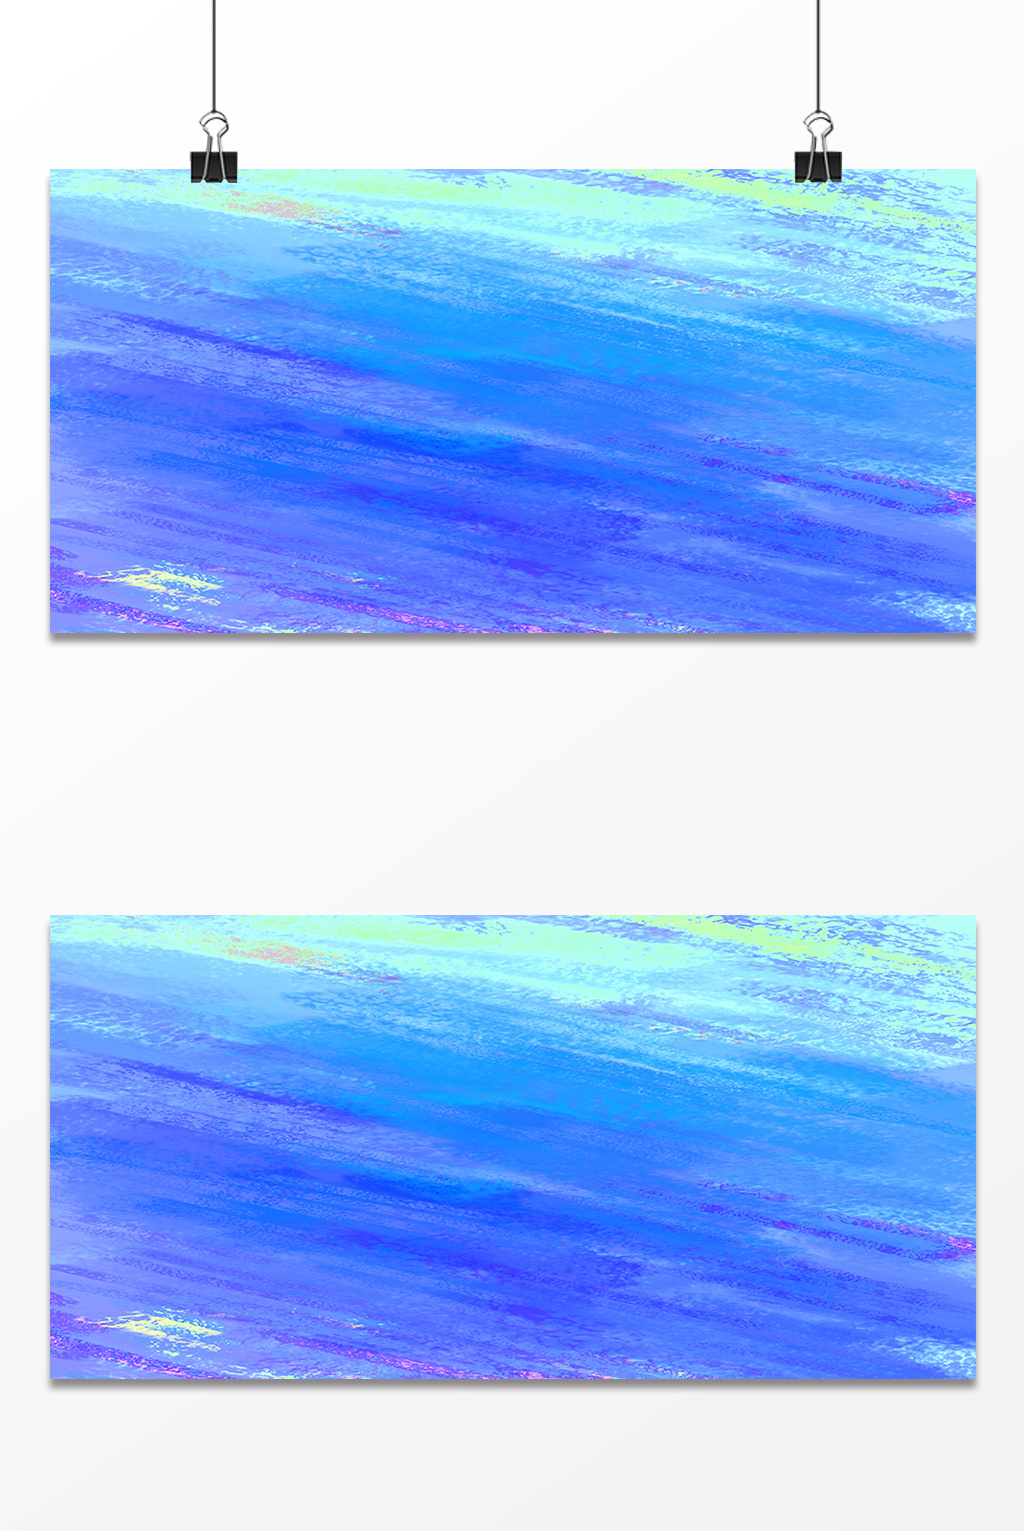 包图网提供精美好看的蓝色水彩渐变背景素材免费下载,本次作品主题是